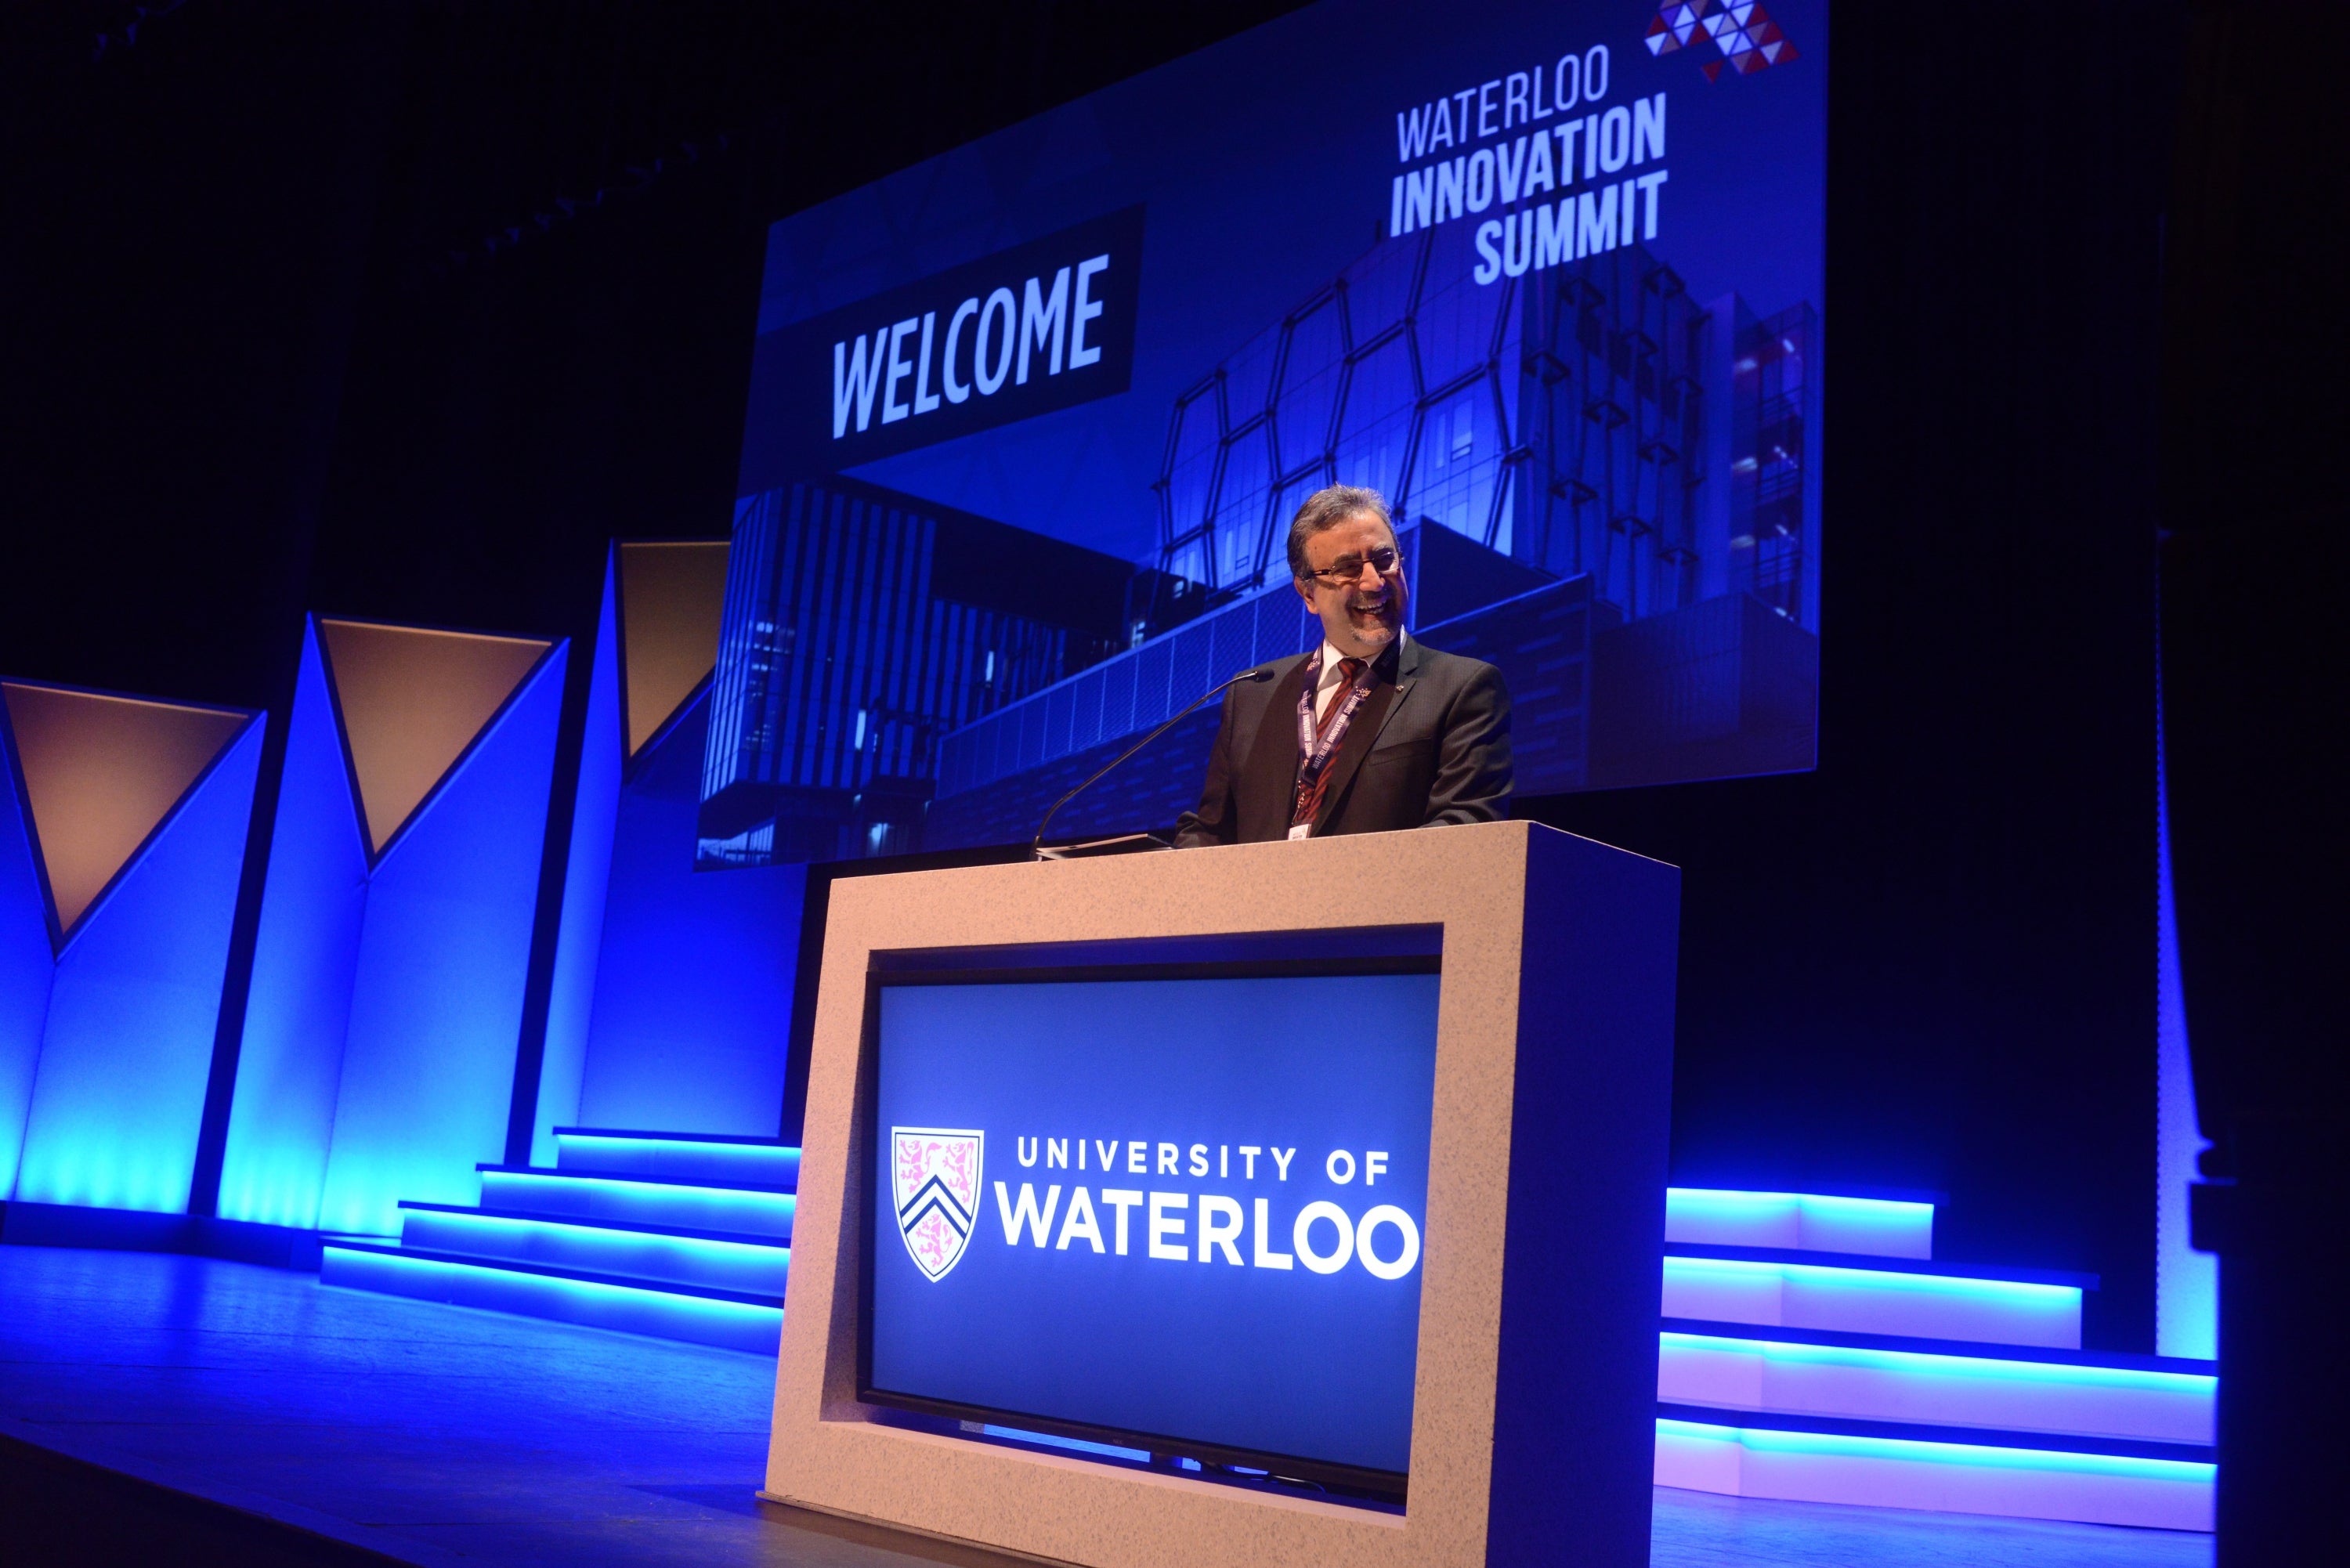 President Feridun Hamdullahpur speaking at Waterloo Innovation Summit